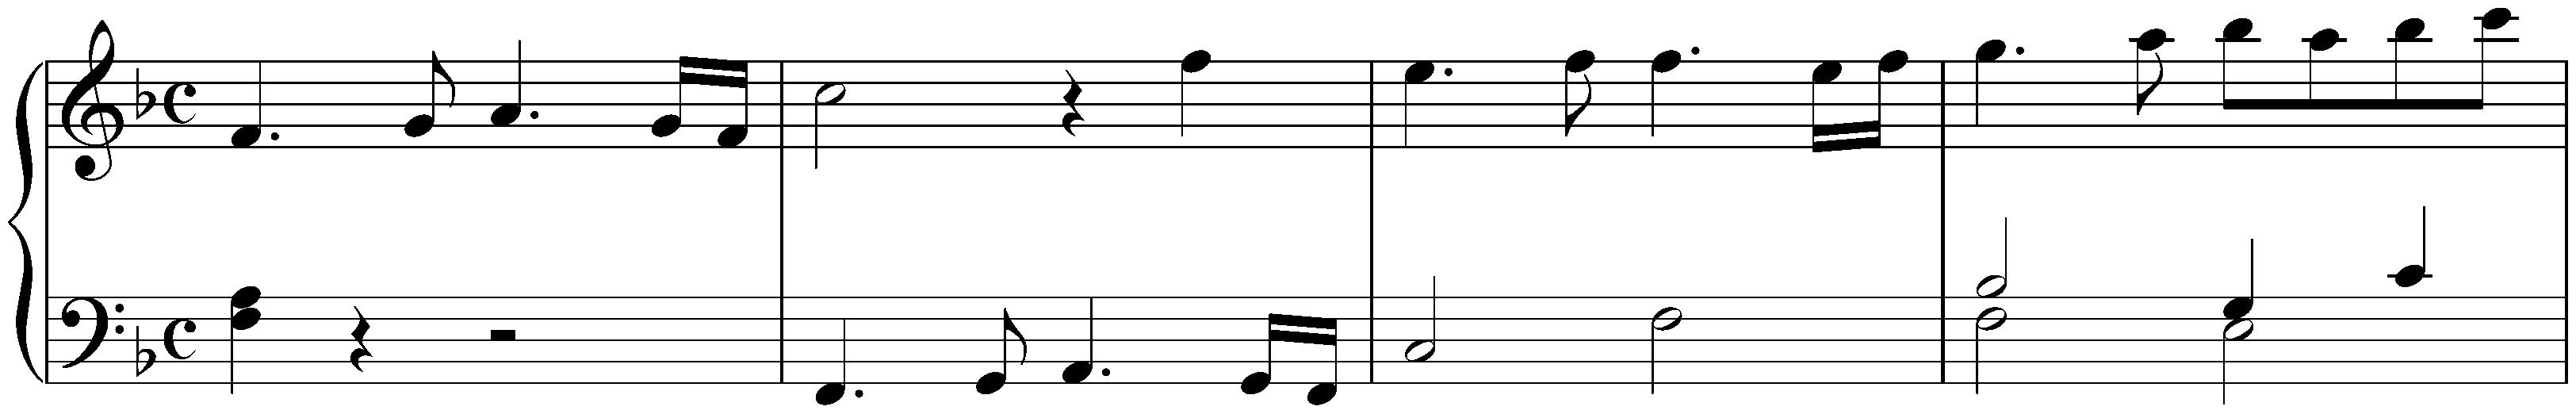 Overture (Suite) in F major, BWV 820; 2. Entrée